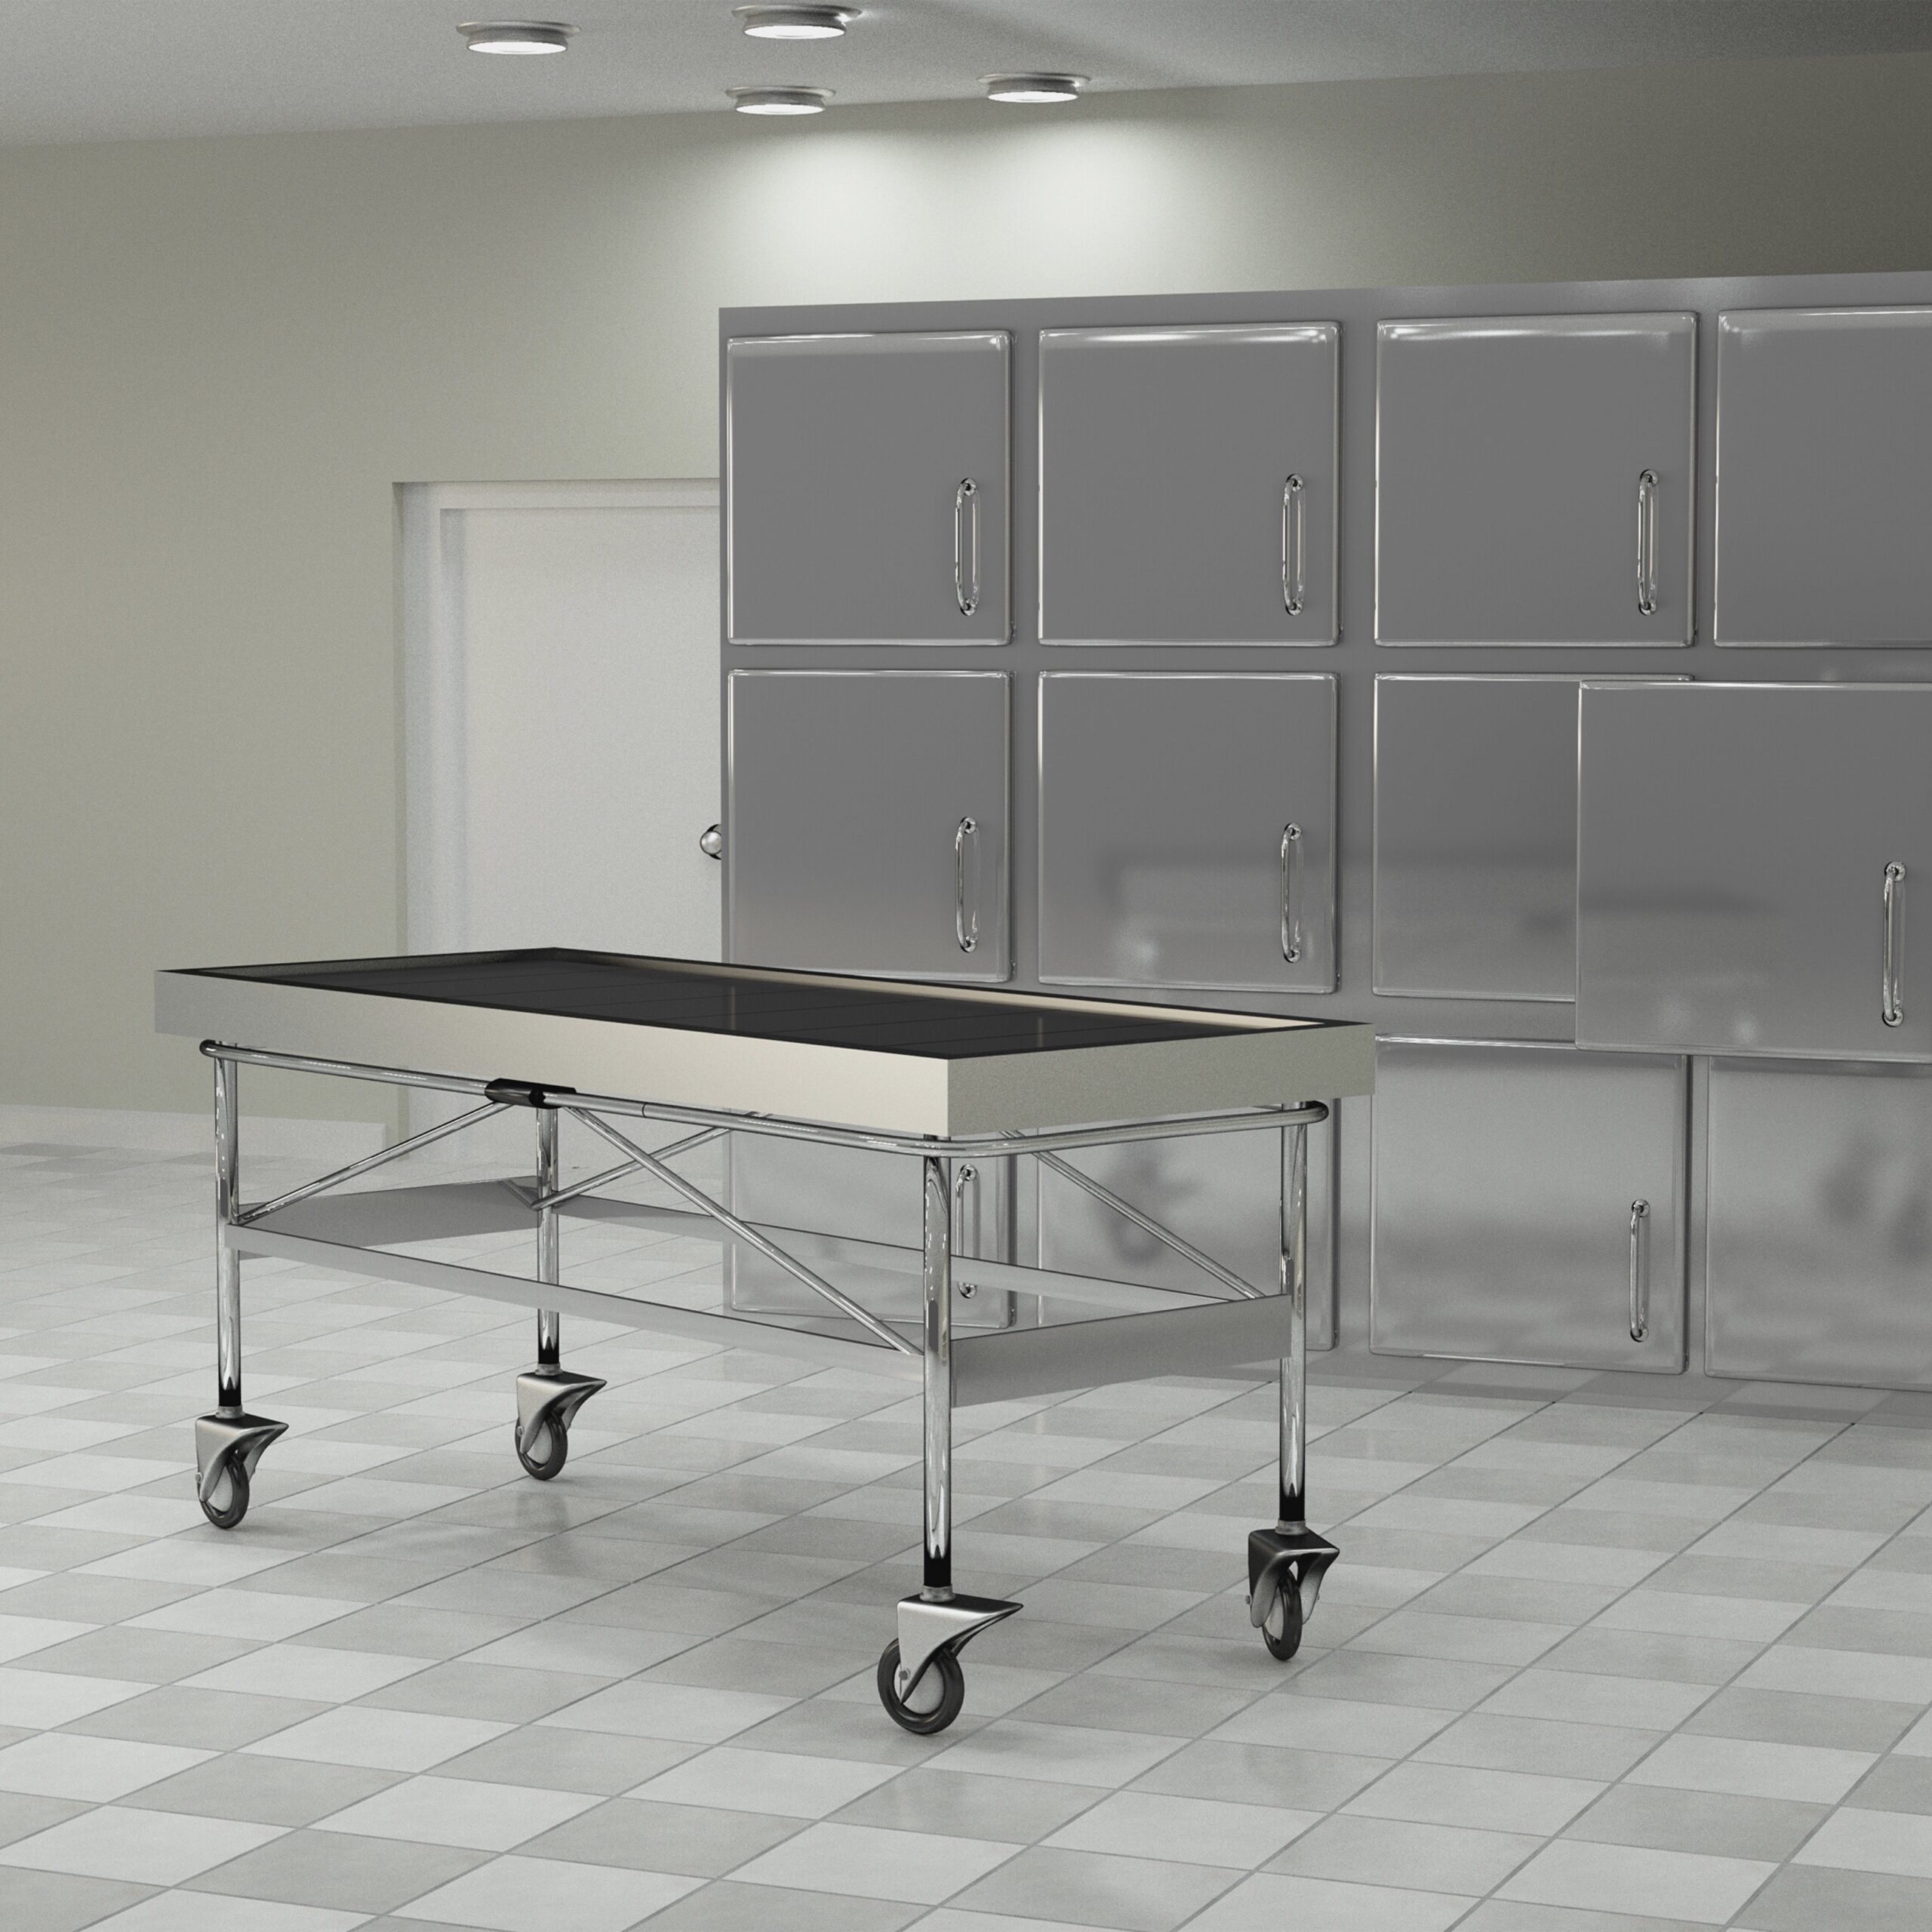 Секционные столы в патологоанатомических отделениях должны быть